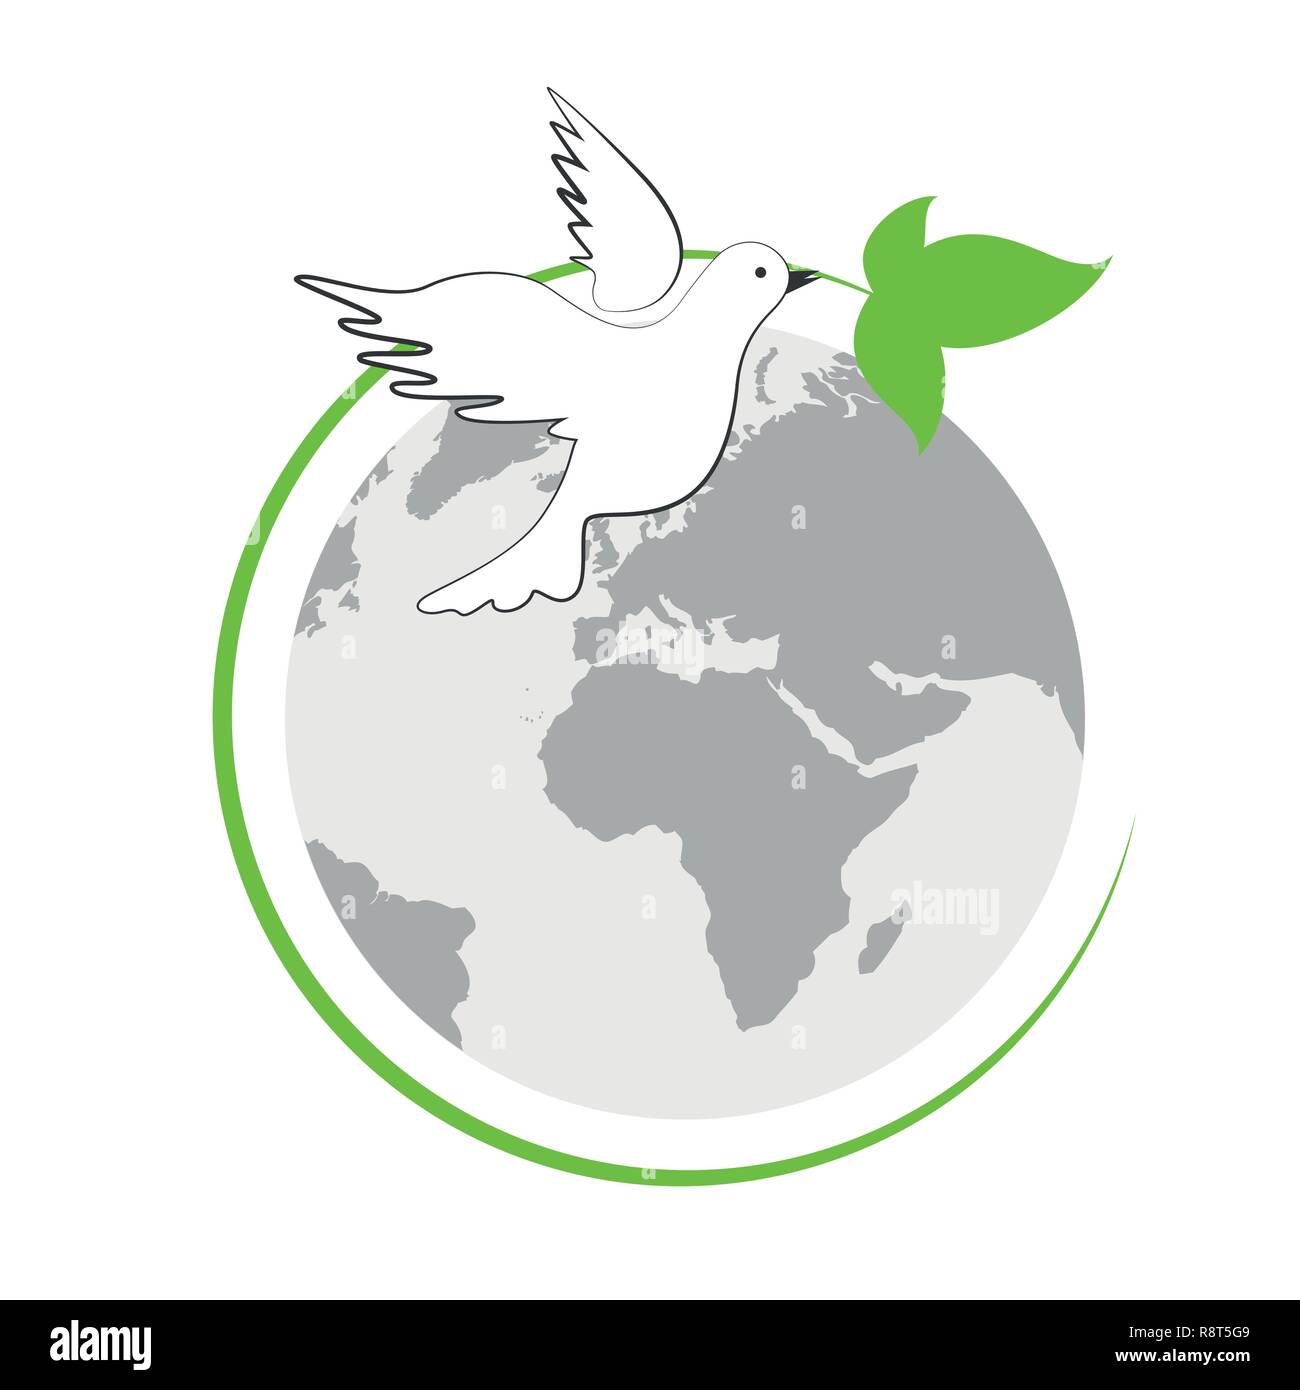 Massa e bianco colomba della pace con foglia verde illustrazione vettoriale EPS10 Illustrazione Vettoriale